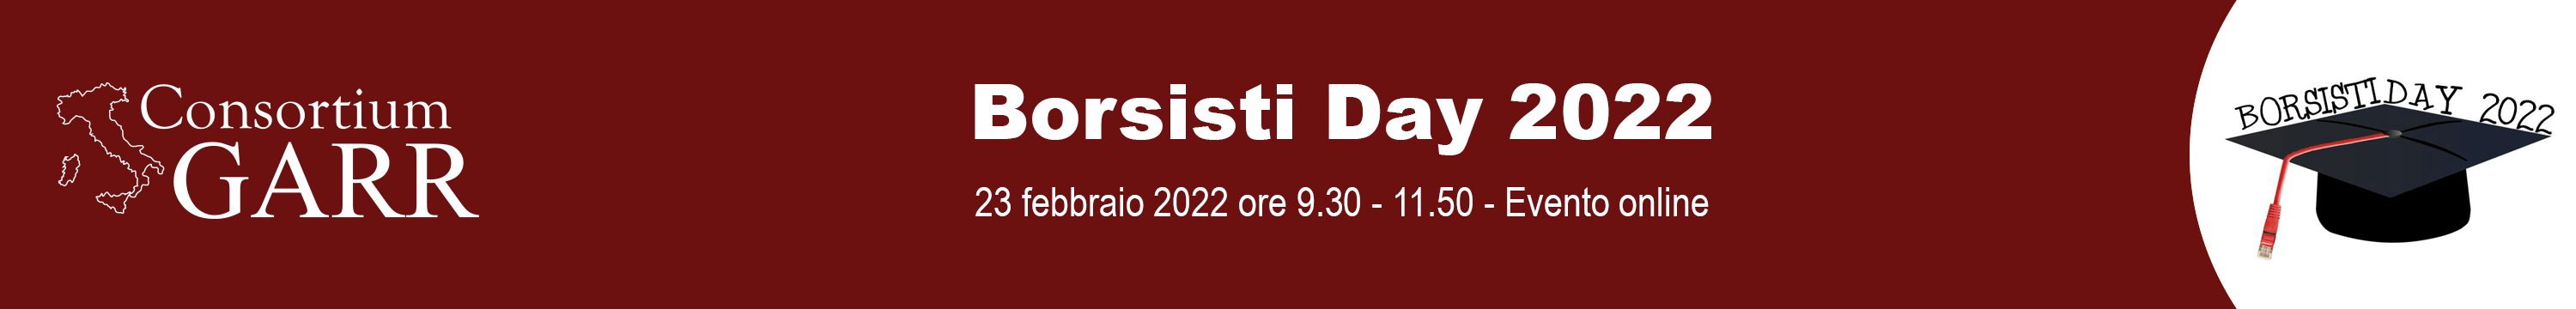 Borsisti day 2022